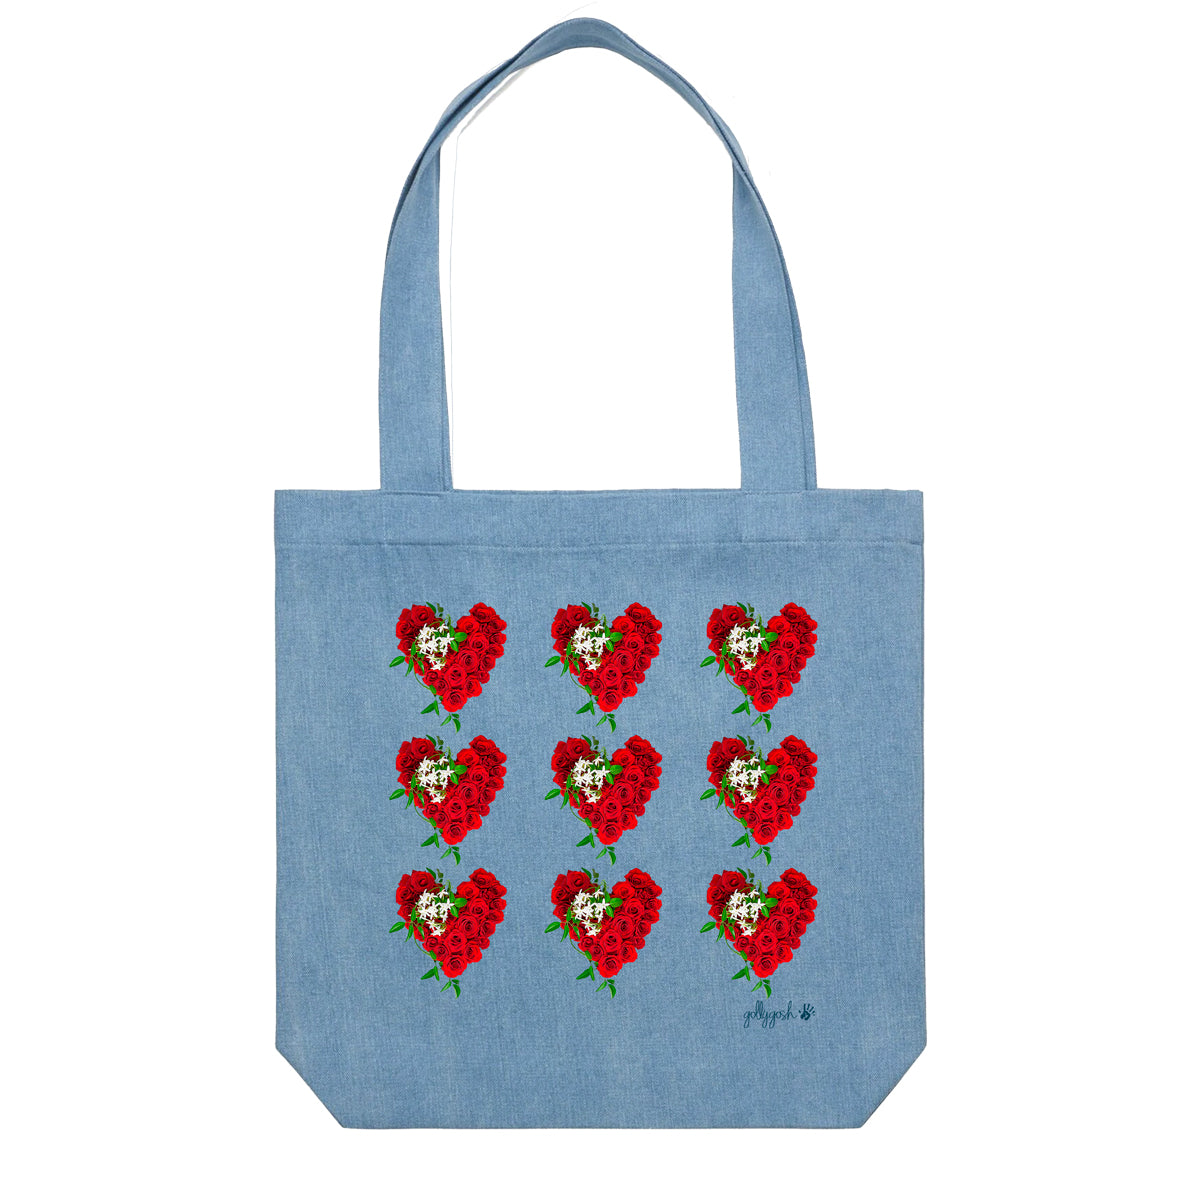 Rose Hearts Tote Bag